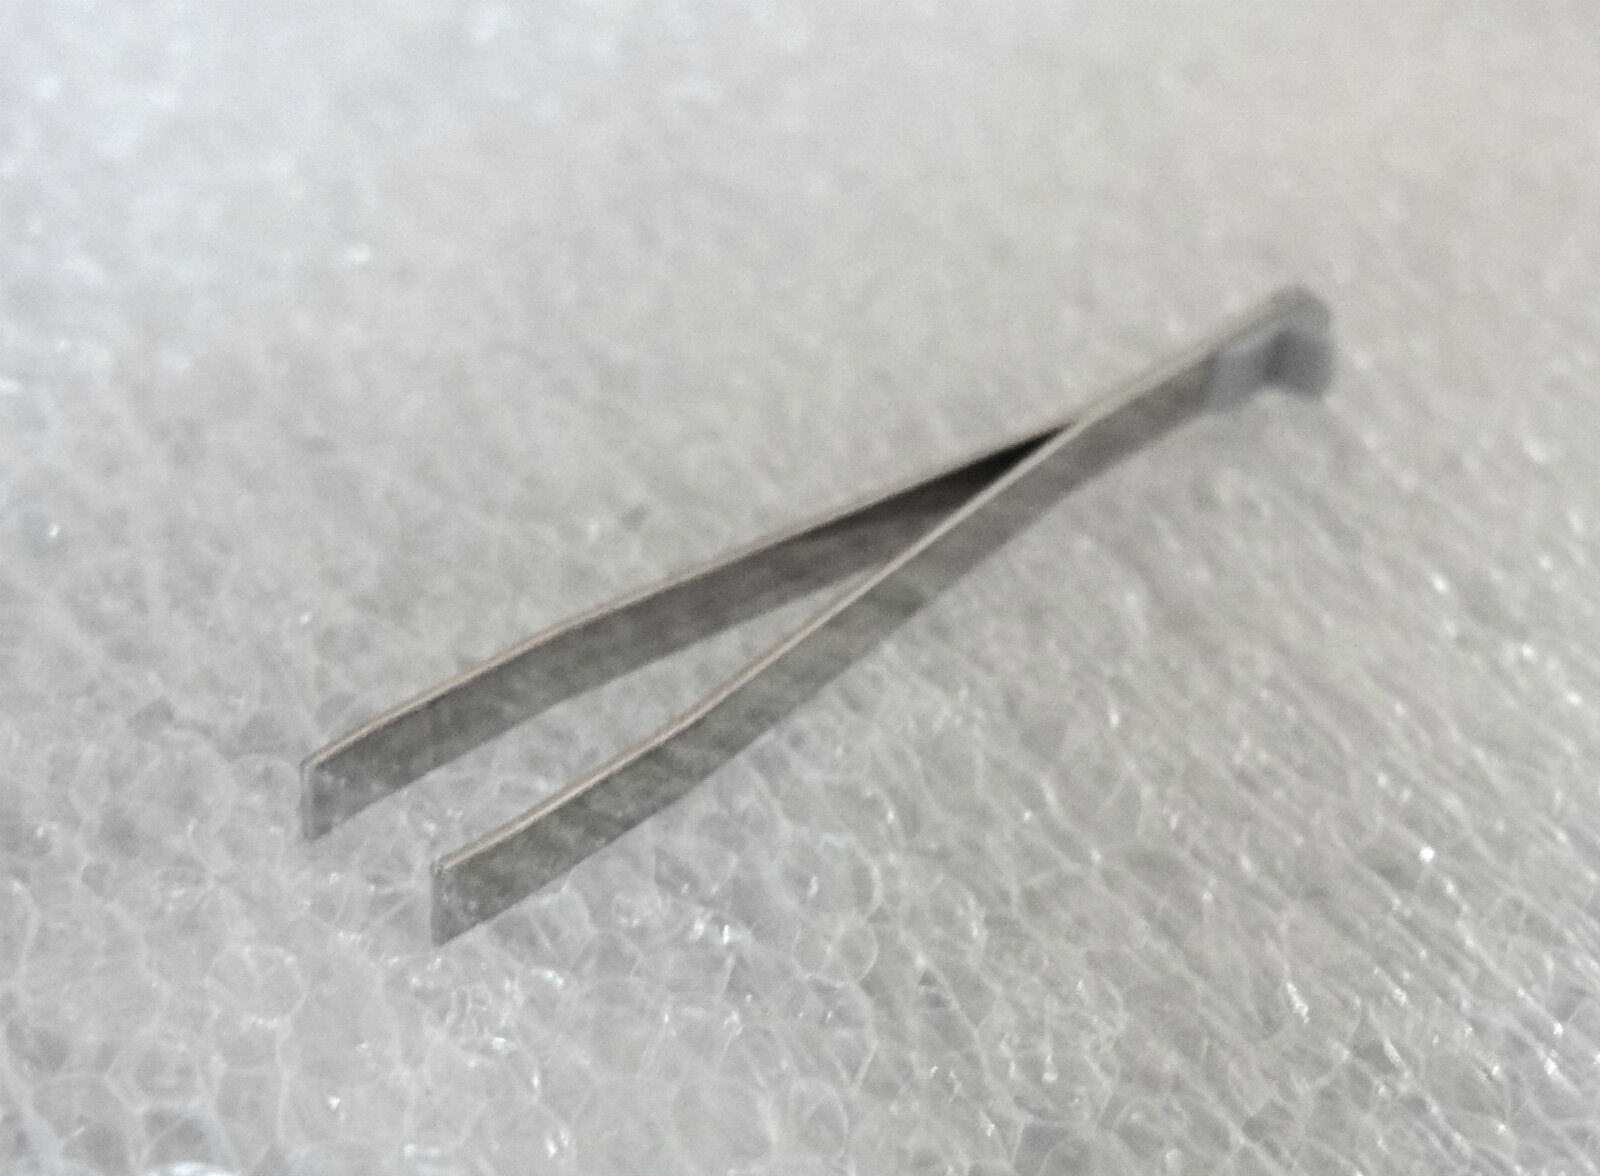 Victorinox Short Replacement Tweezers For Altimeter, Voyager & Traveler Knives